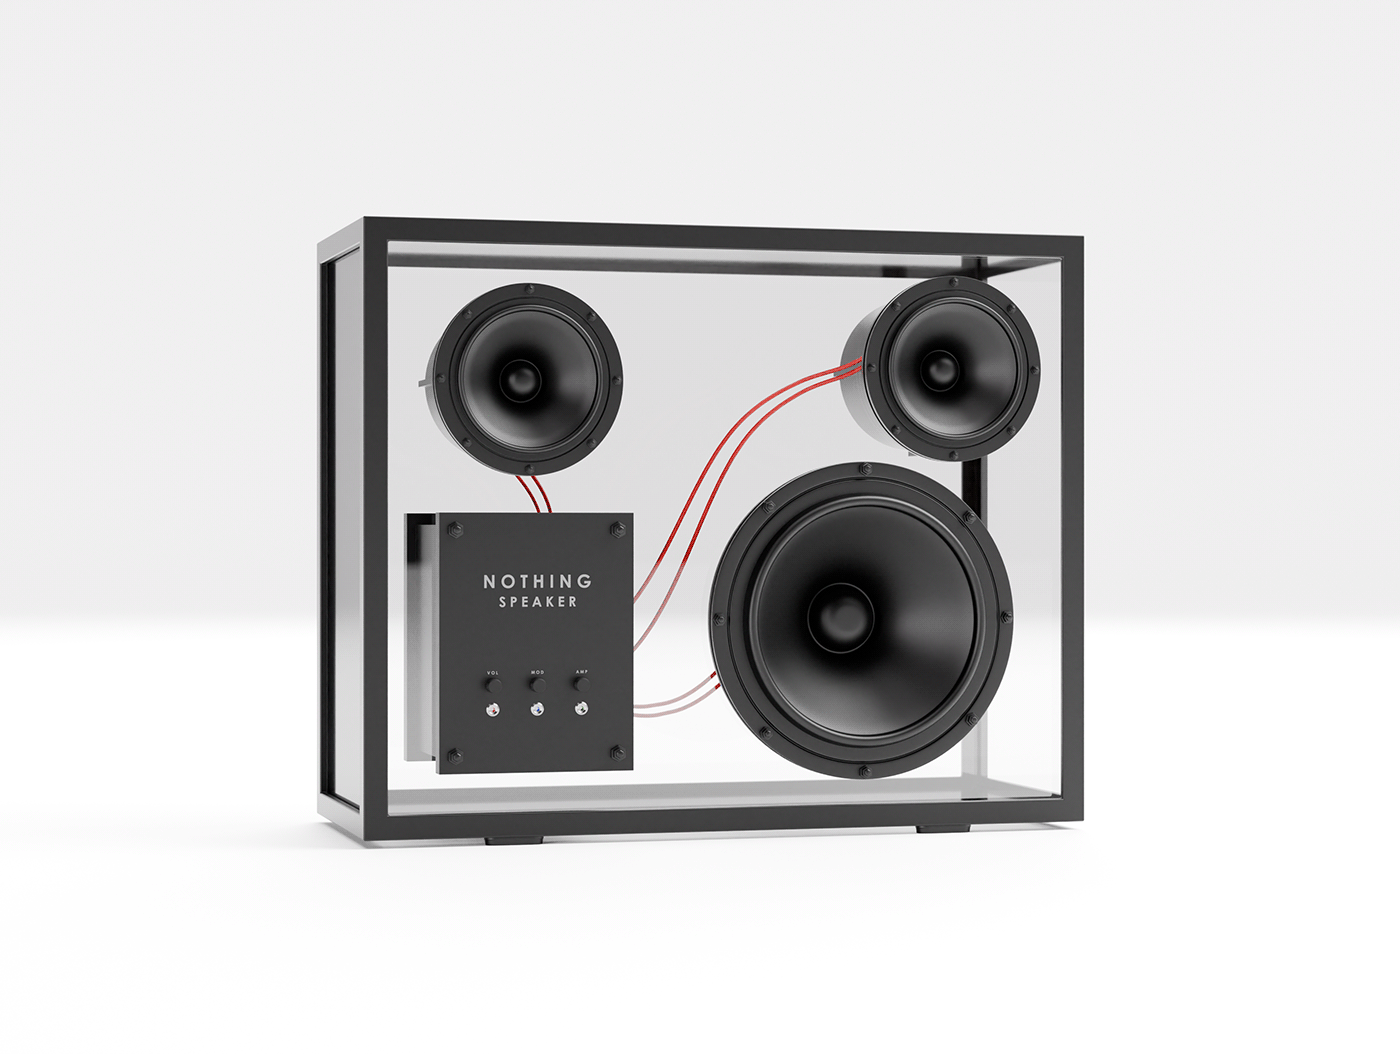 loudspeaker 3D blender 3d modeling design product design  product industrial design  concept visual